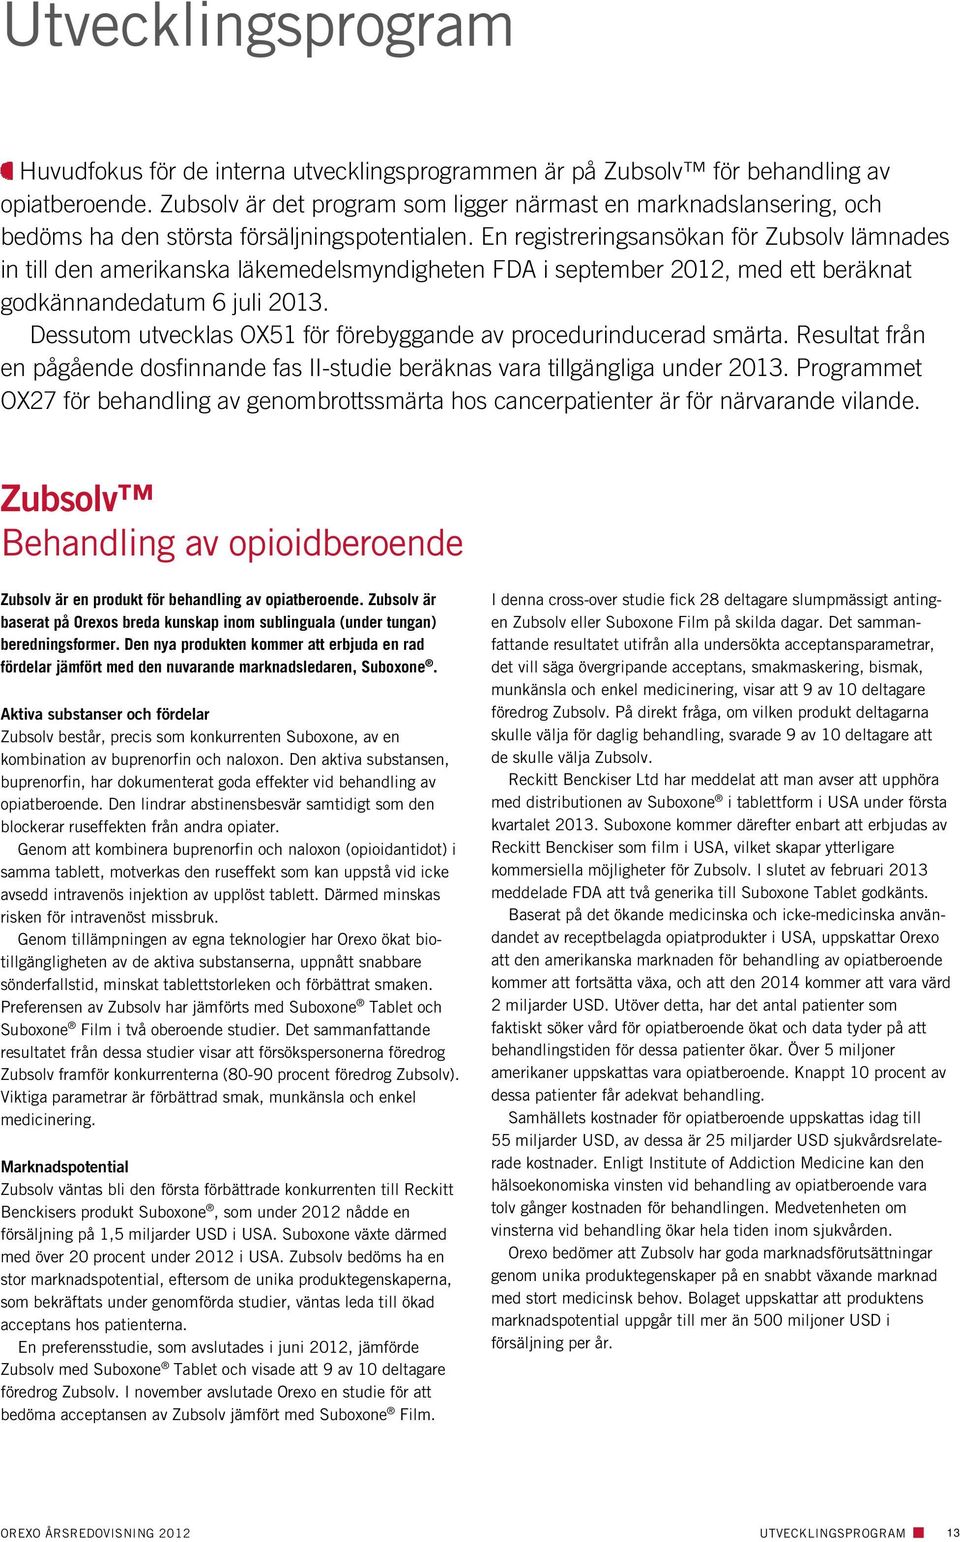 En registreringsansökan för Zubsolv lämnades in till den amerikanska läkemedelsmyndigheten FDA i september 2012, med ett beräknat godkännandedatum 6 juli 2013.